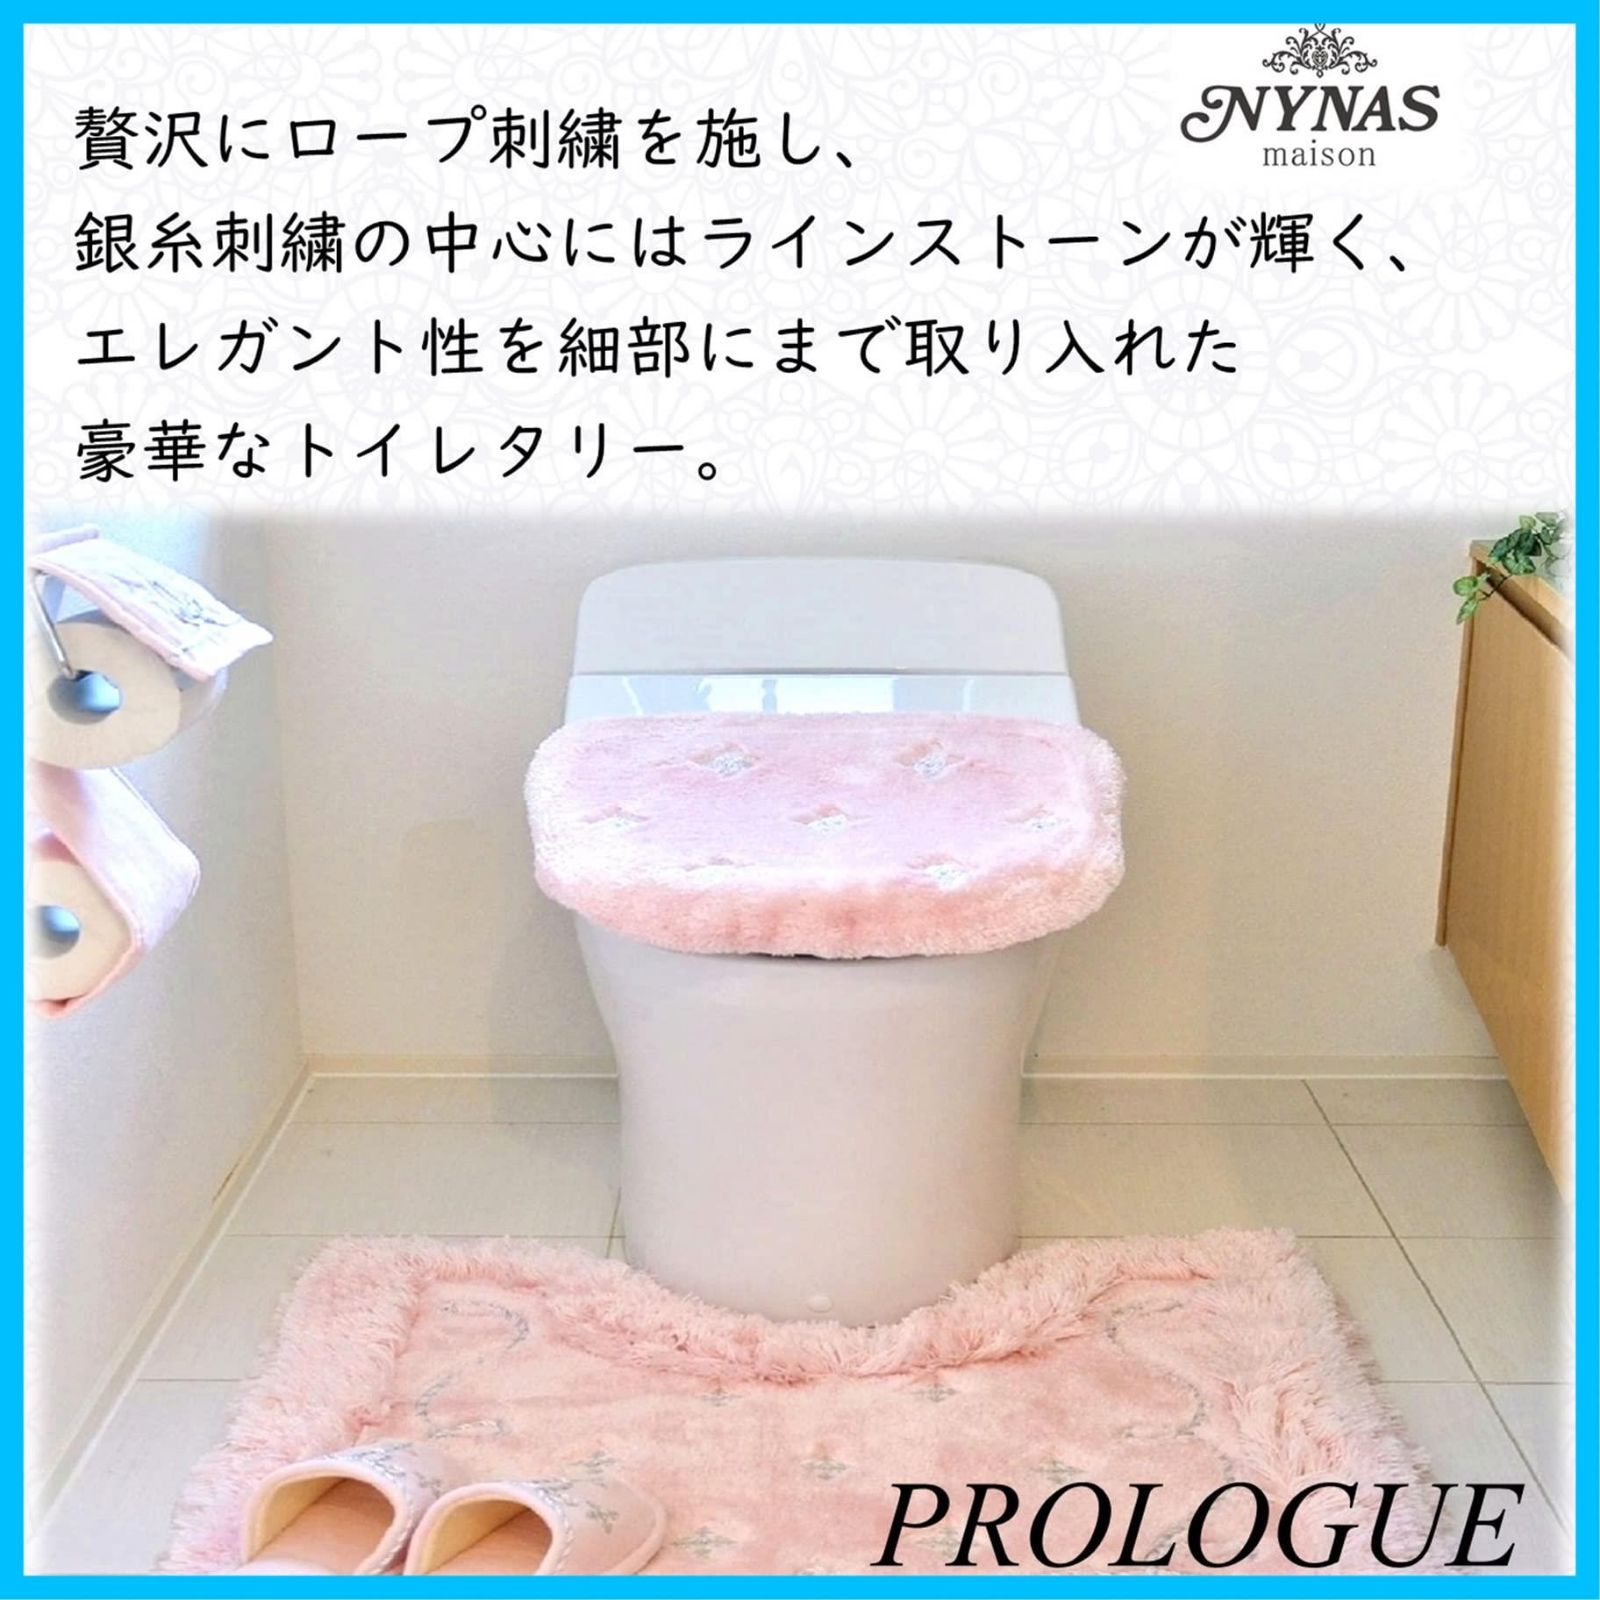 人気商品】トイレシリーズ プロローグ NYNAS センコー - メルカリ